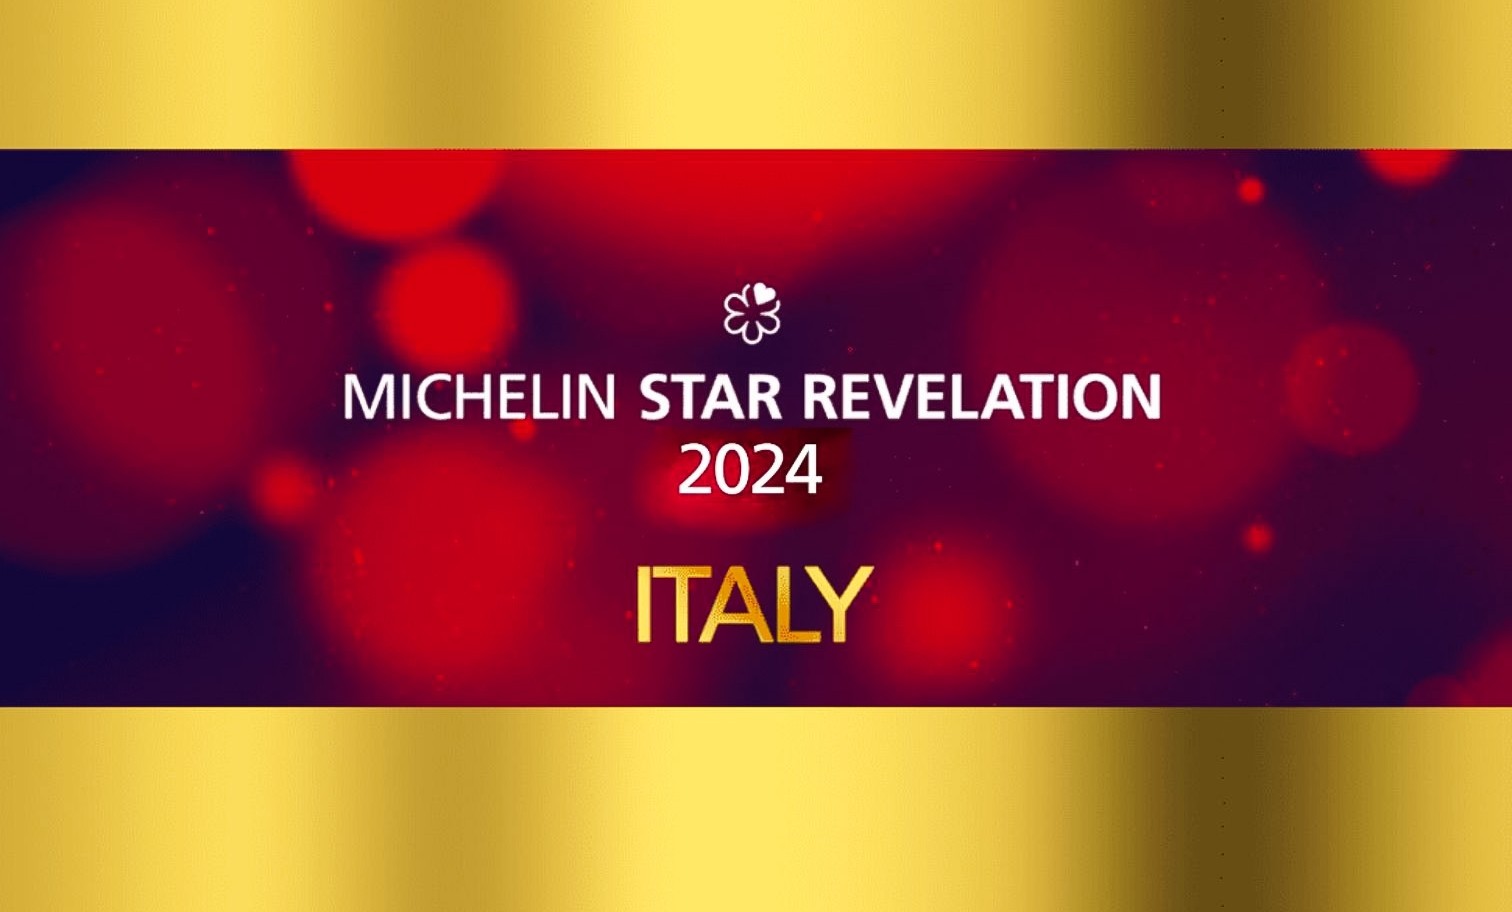 copertina guida michelin italia 2024